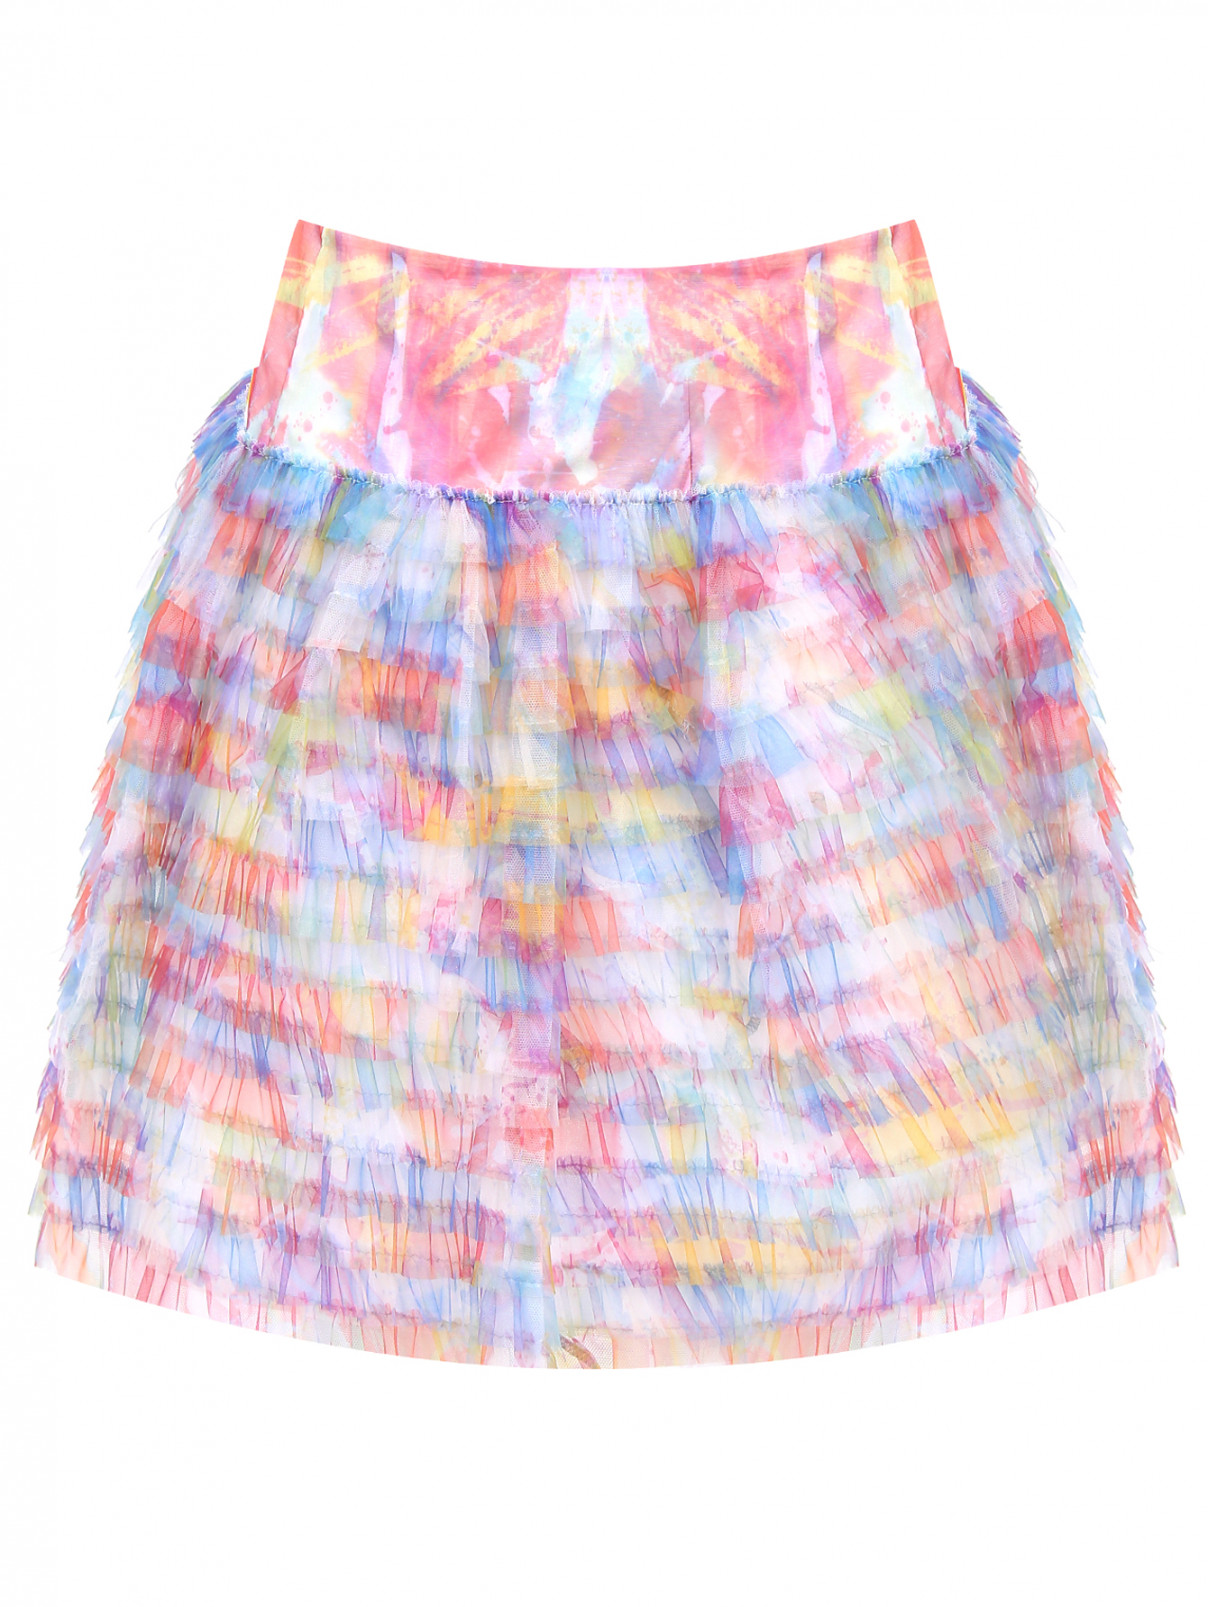 Пышная юбка с оборками Simonetta  –  Общий вид  – Цвет:  Мультиколор